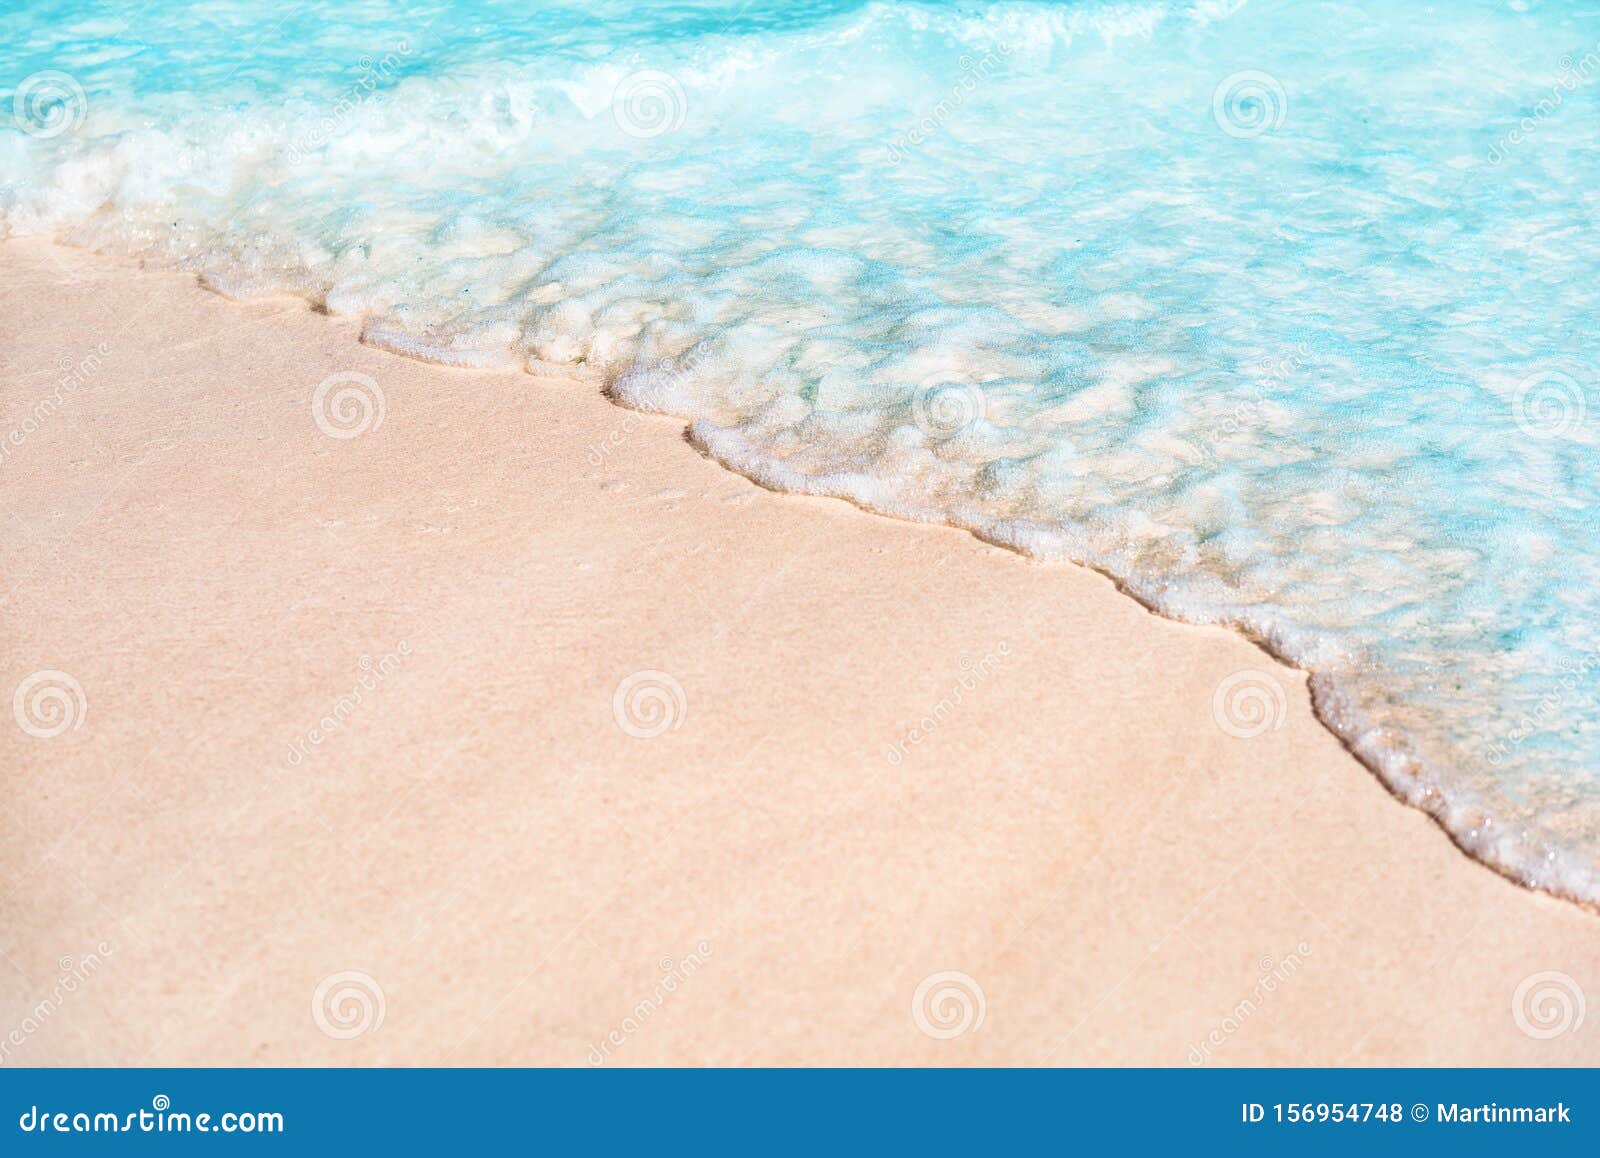 Textura de arena blanca en la playa para el fondo